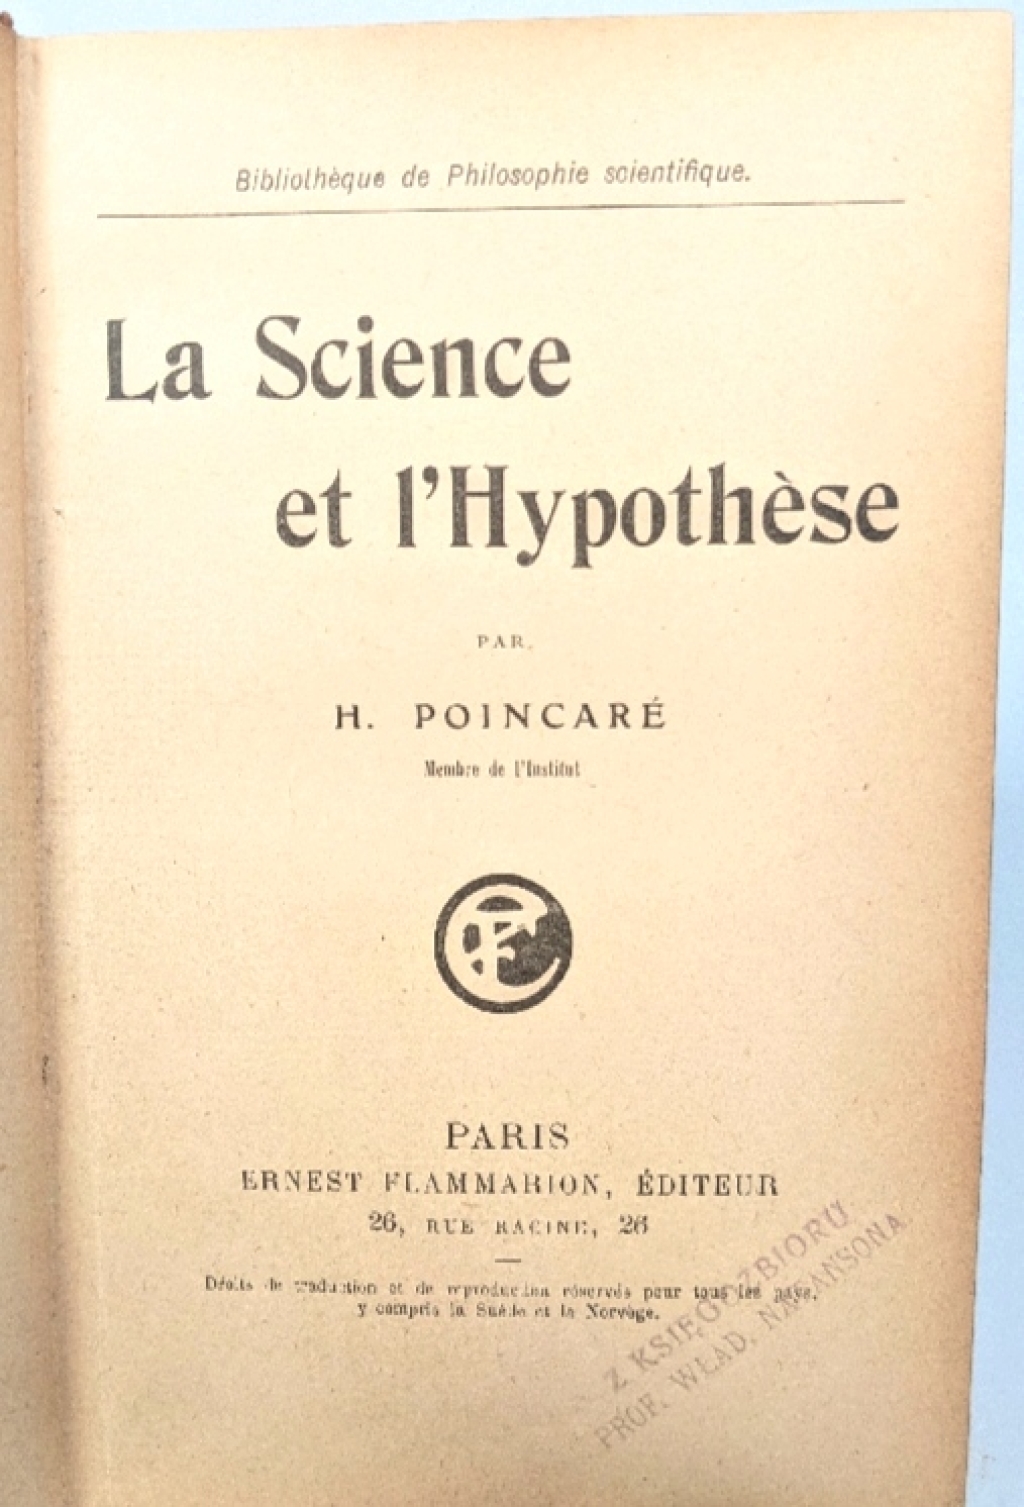 La Science et l'Hypothese  [pierwodruk, egz. z księgozbioru prof. W. Natansona]